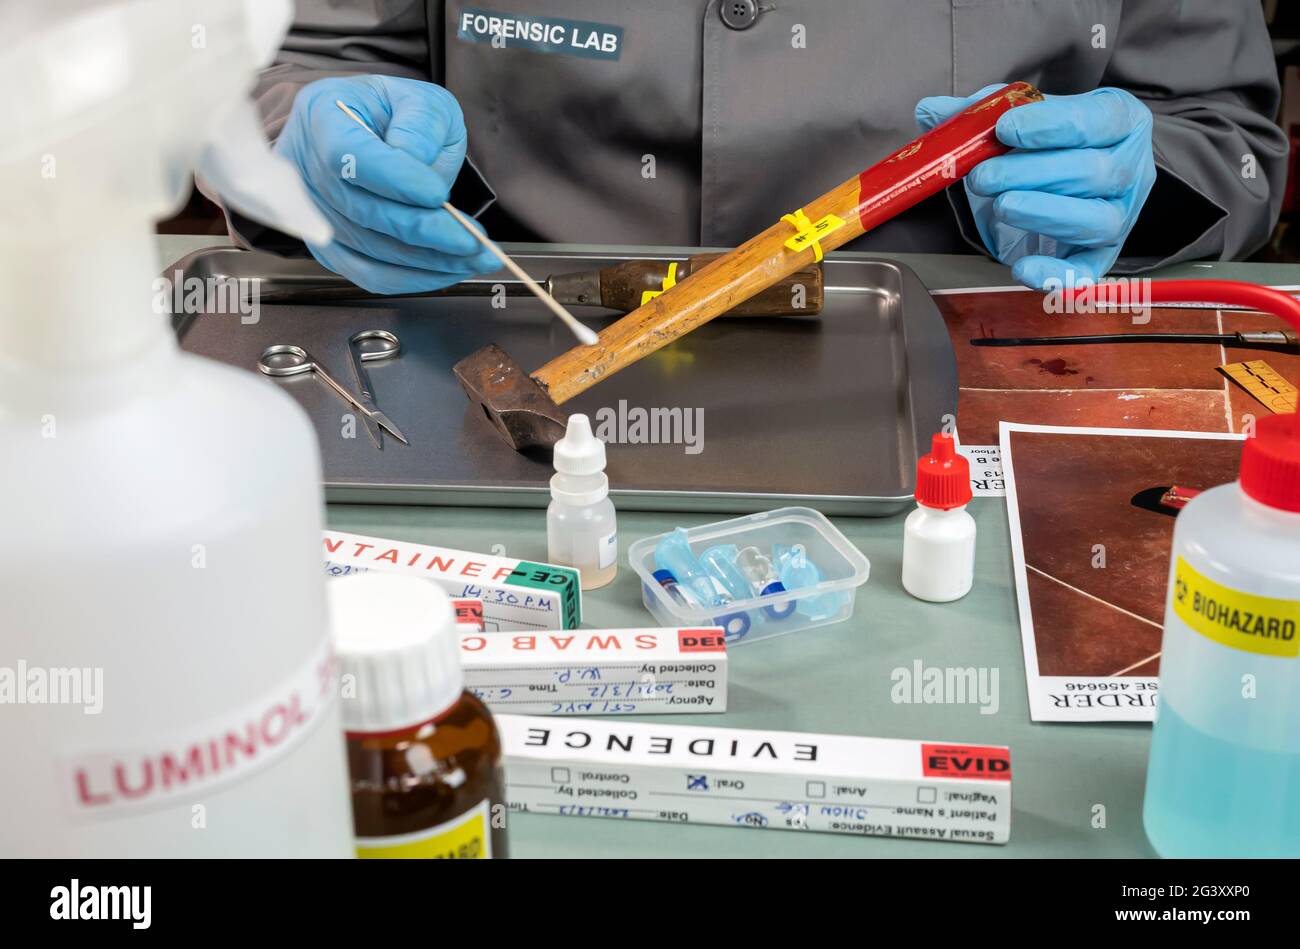 Un científico de la policía extrae una muestra de ADN de un par de martillo en un laboratorio de delincuencia, la imagen conceptual Foto de stock